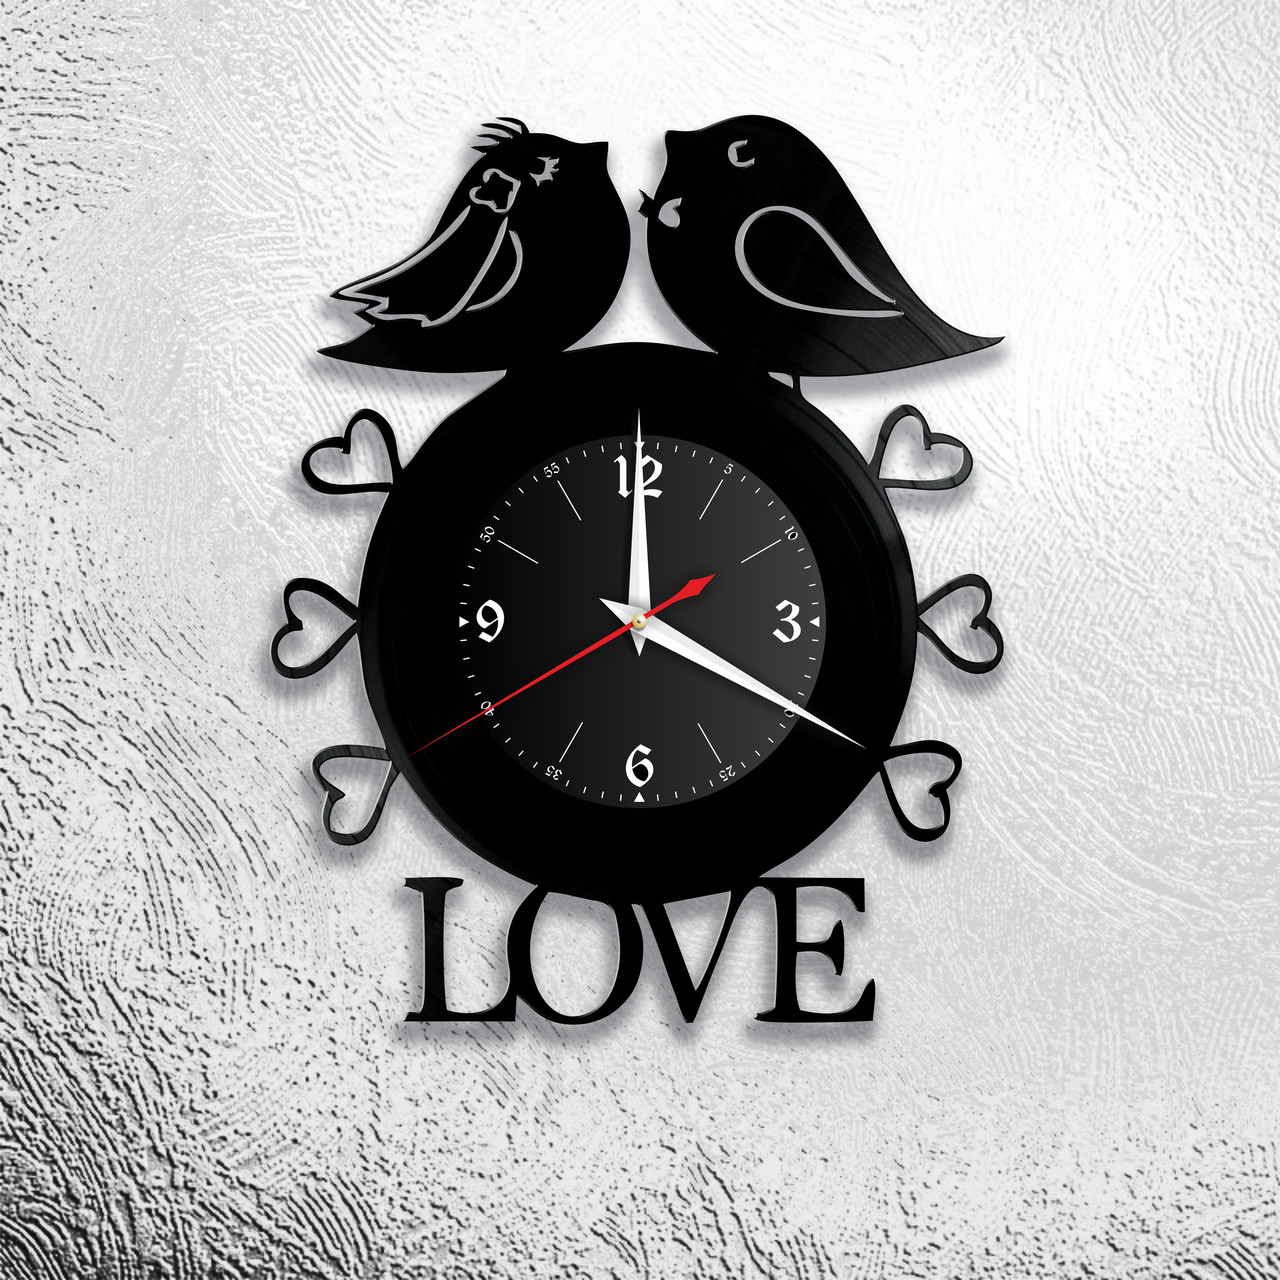 Оригинальные часы из виниловых пластинок "Любовь" версия 3, фото 1